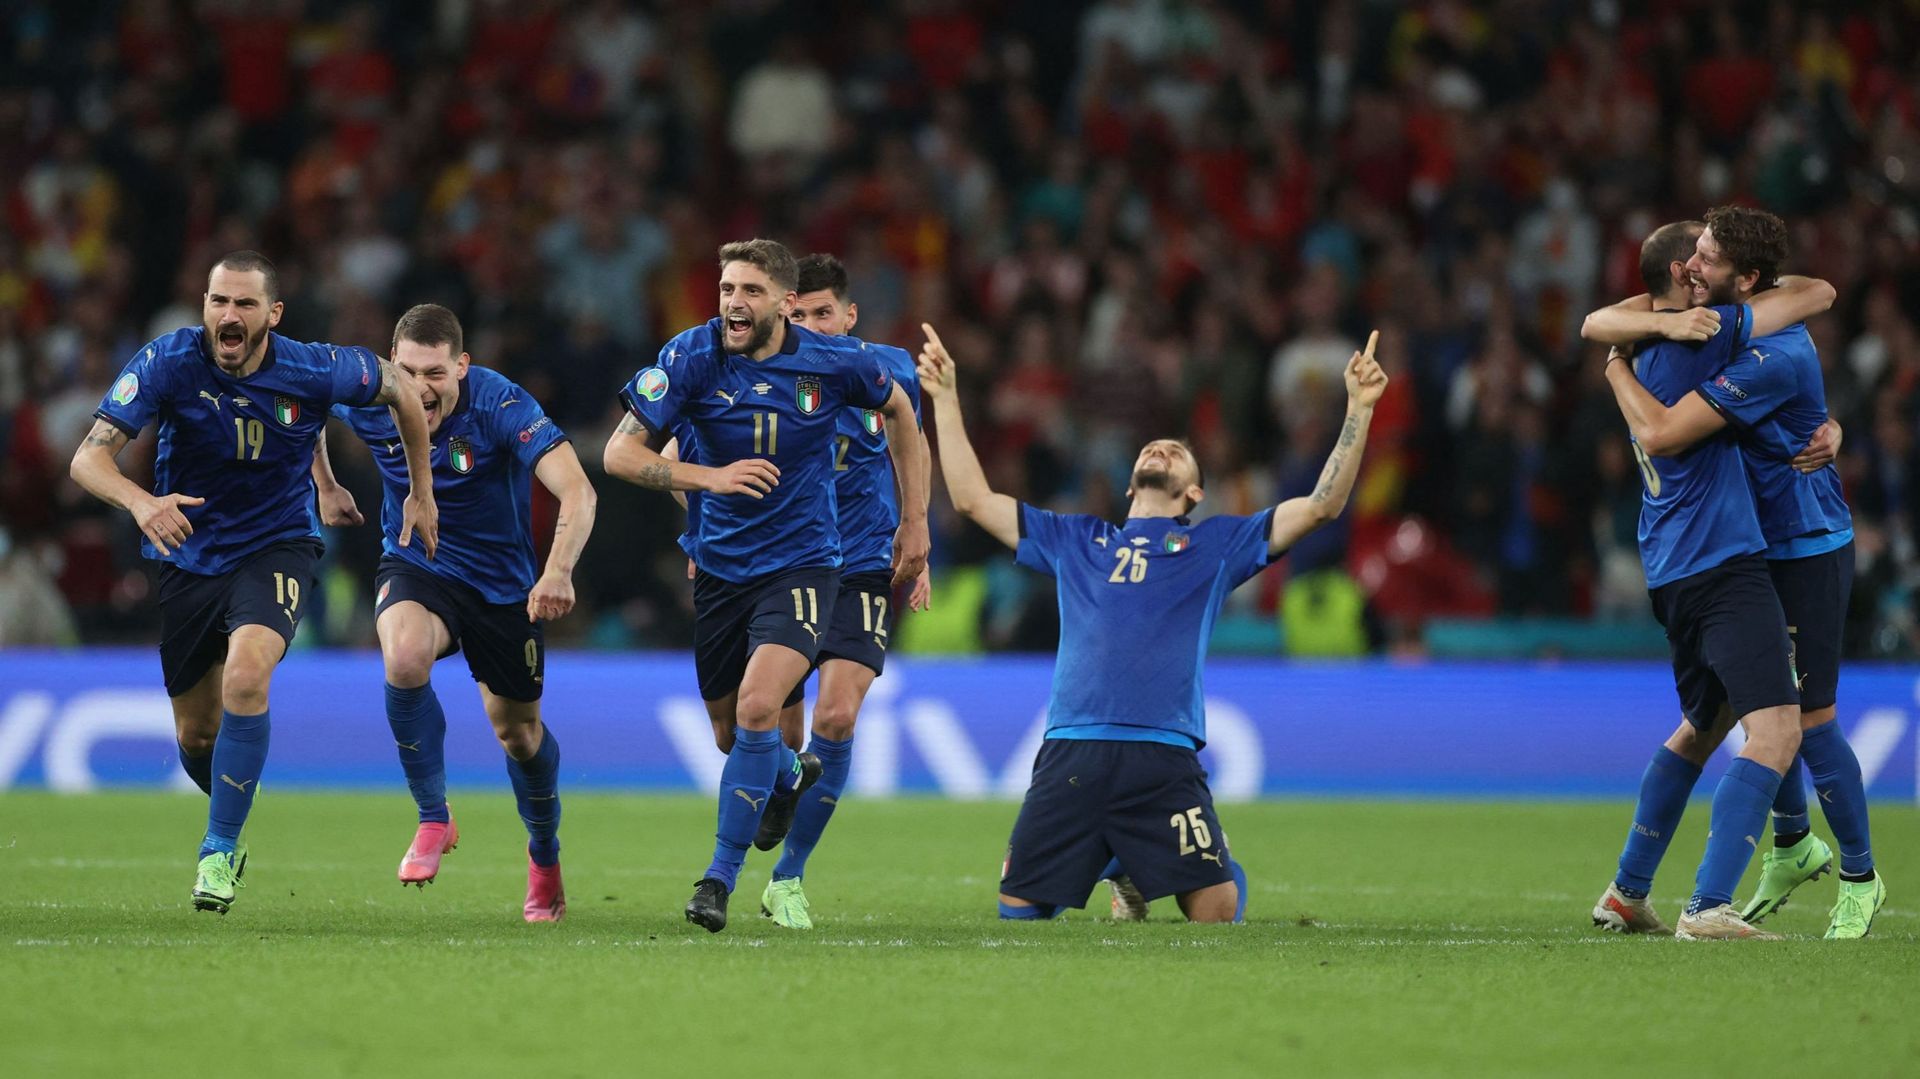 Au bout de la séance des tirs au but, l'Italie rejoint la finale.